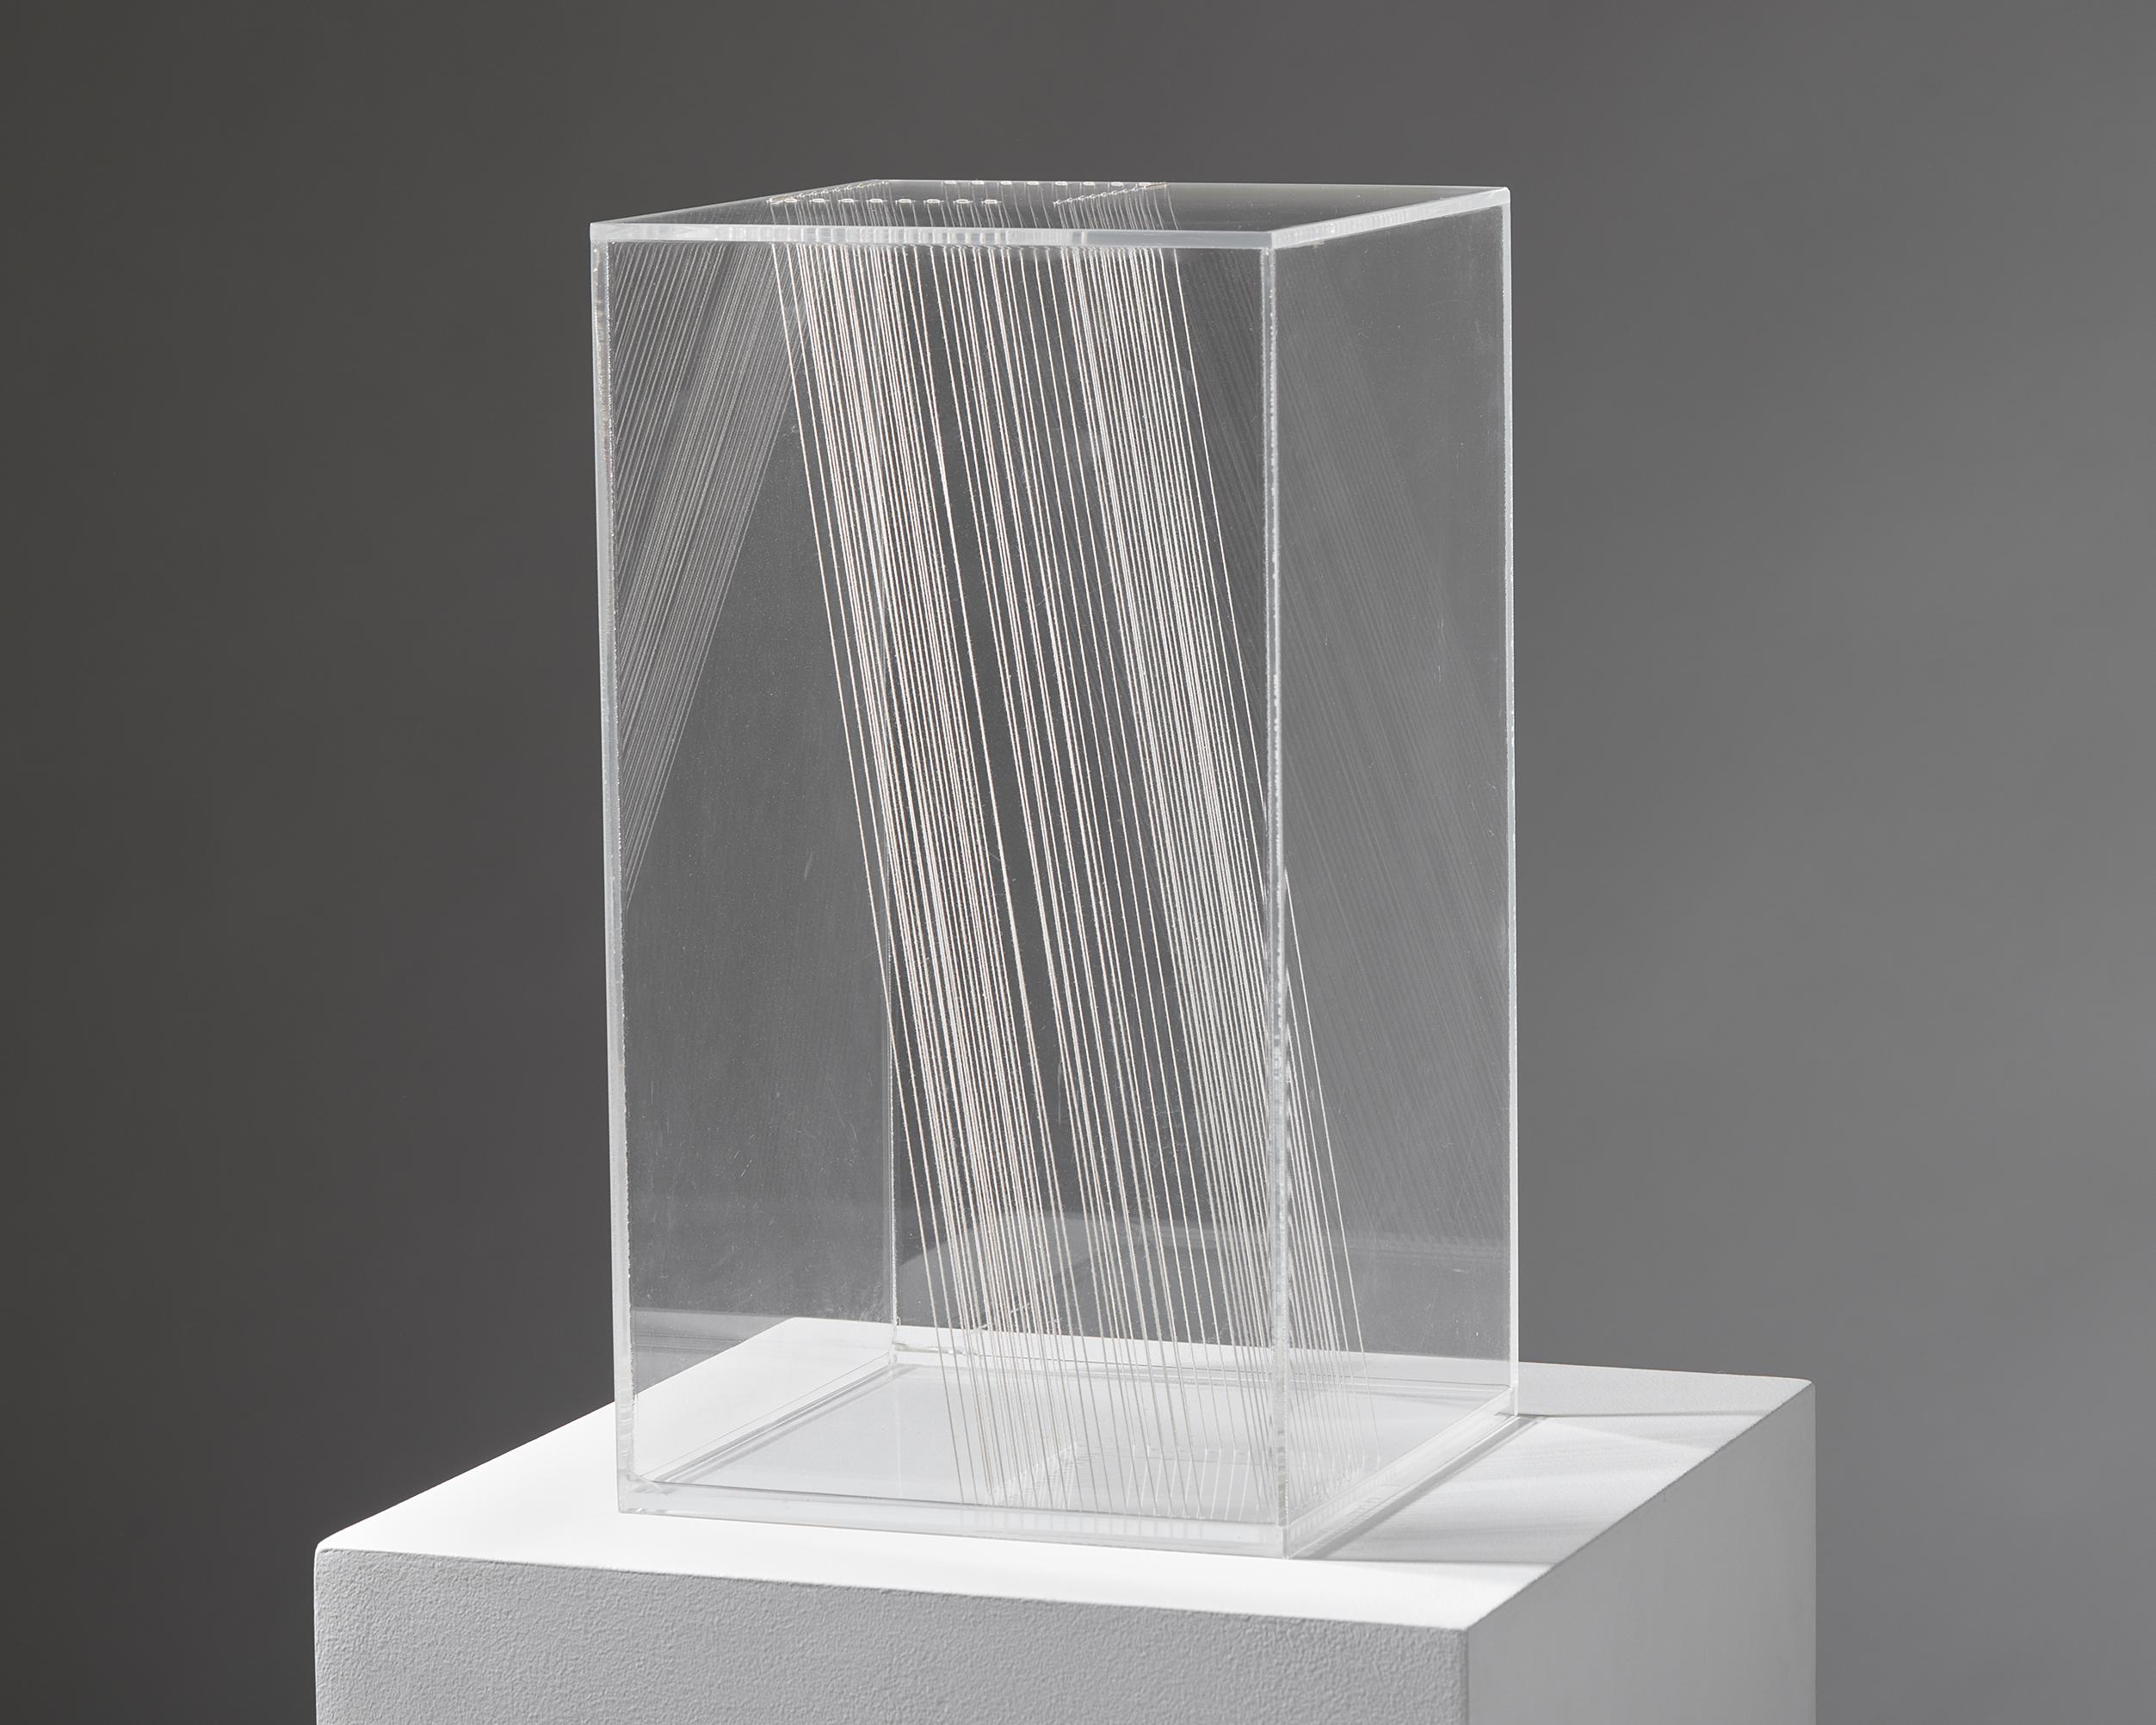 Sculpture ‘Ljusgård’ designed by Lars Erik Falk,
Sweden, 1980.

Acrylic glass and string.

Measures: H: 41 cm / 16''
W: 22.5 cm / 9''
D: 22.5 cm / 9''

Provenance: Uppsala Auktionskammare, Lennart Nyberg Collection, 5 december 2012, kat. nr